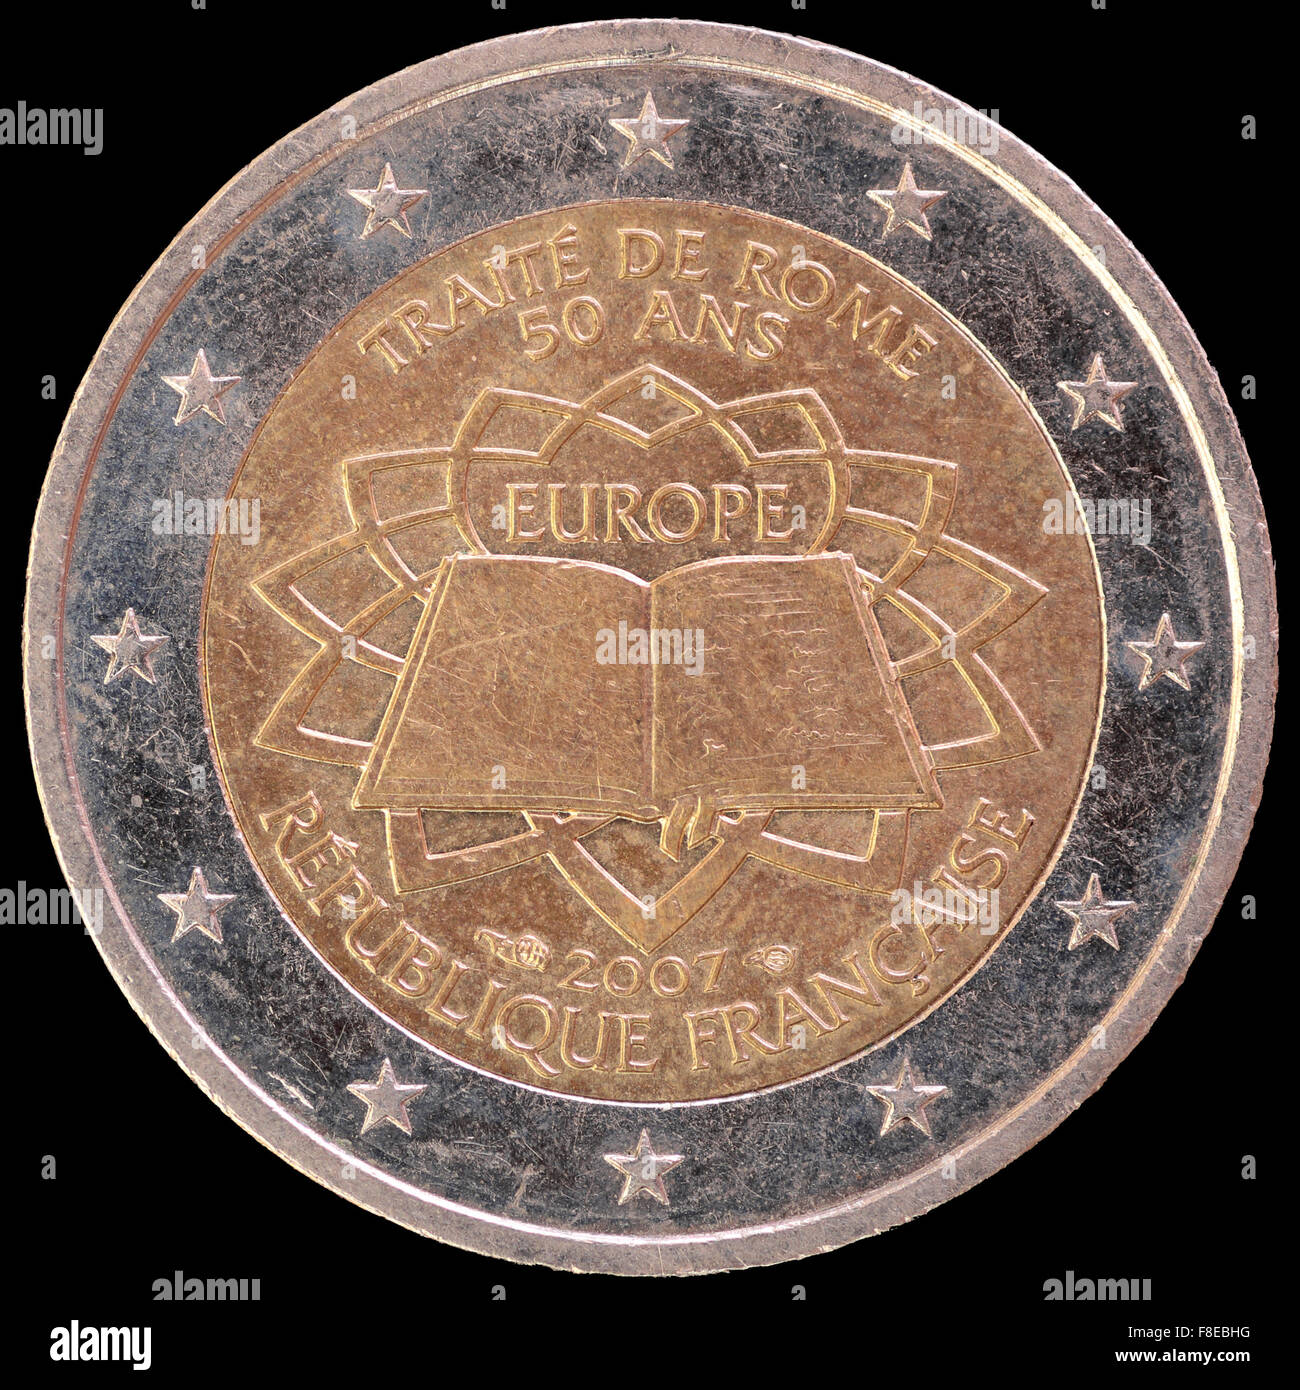 Eine Festschrift verteilt zwei-Euro-Münze herausgegeben von Frankreich im Jahr 2007 feiert den Jahrestag der Römischen Verträge. Bild-ich Stockfoto